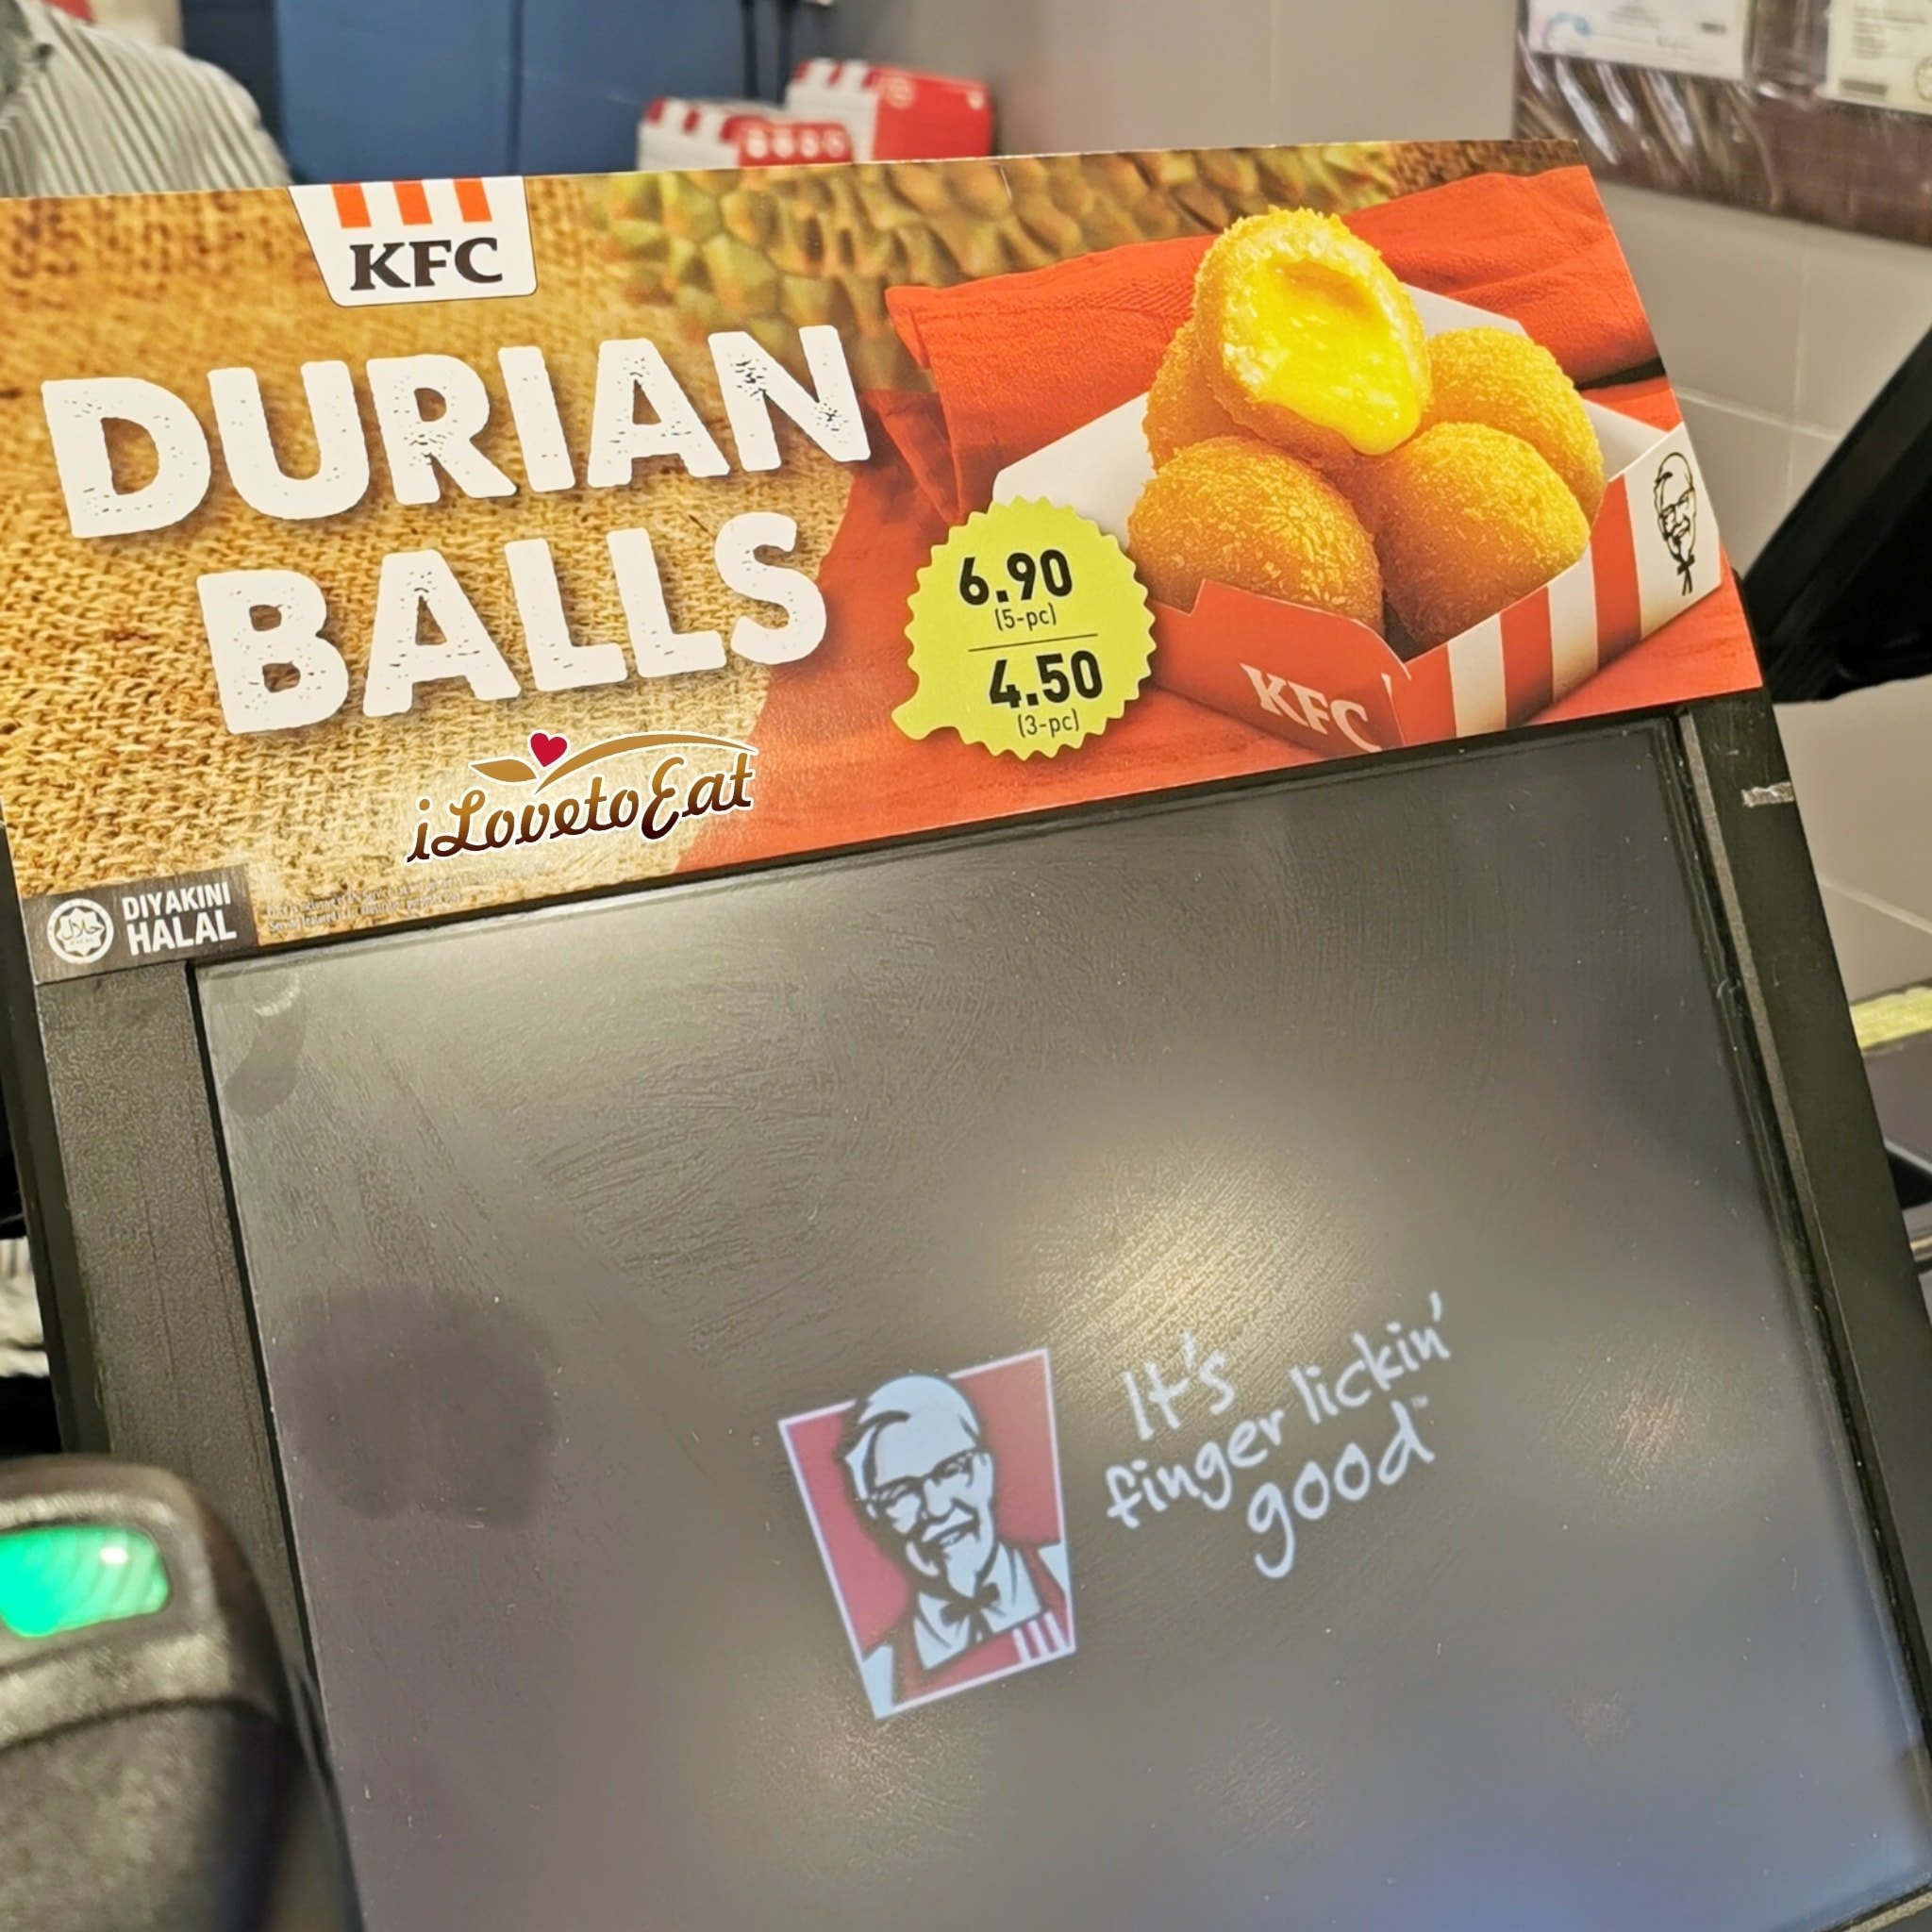 fried durian balls